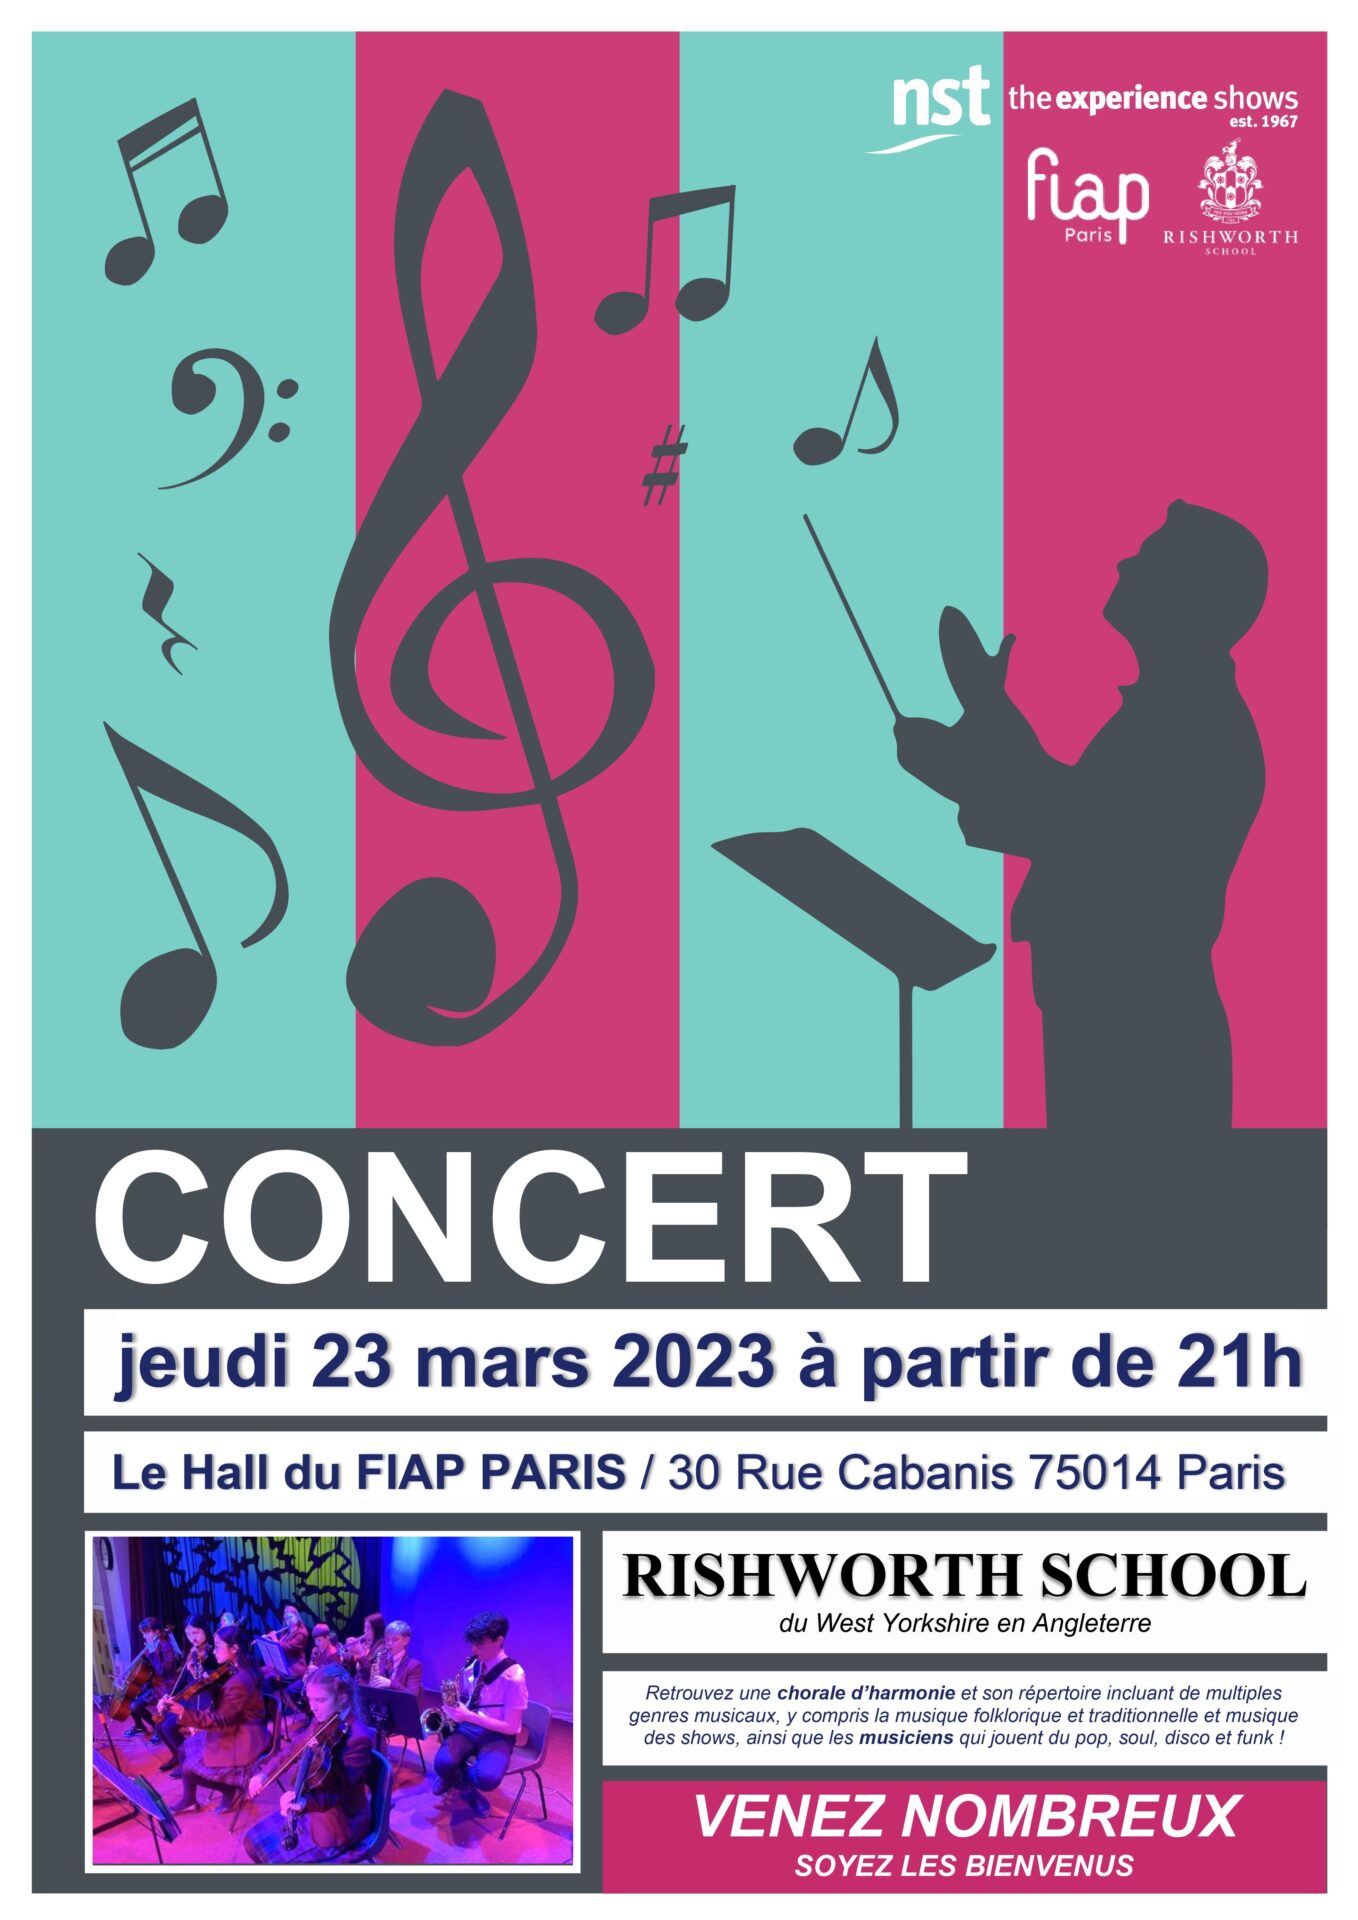 rishworth-school-concert